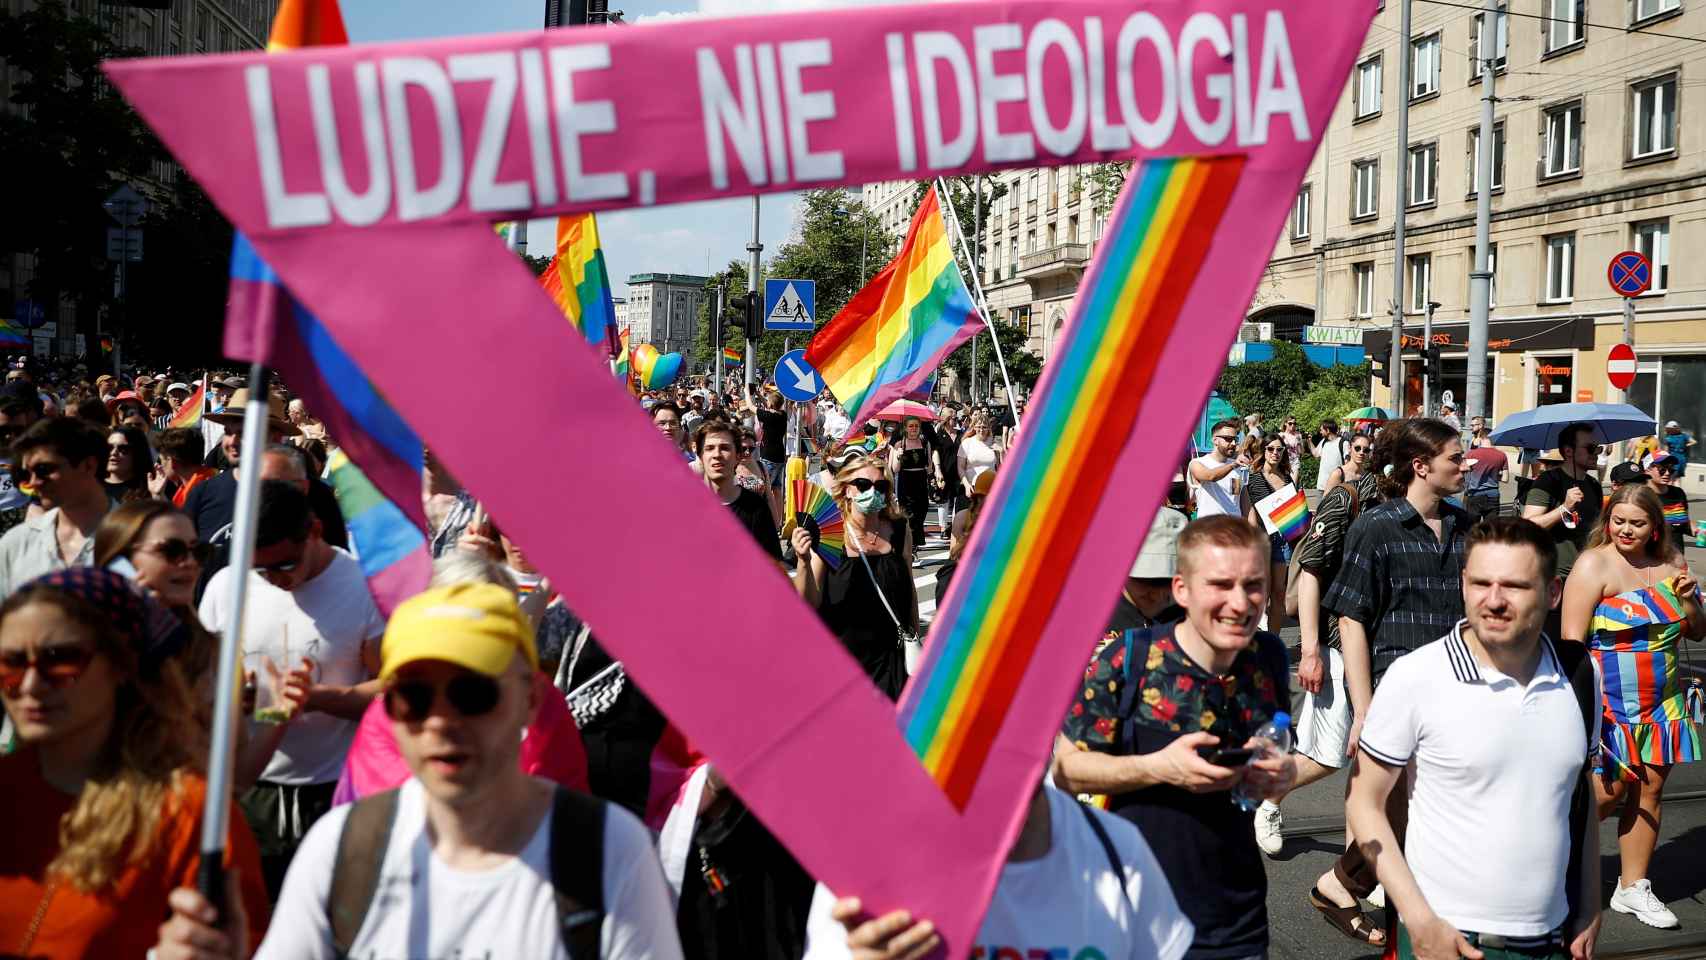 Manifestación de apoyo a la comunidad LGTBI en Polonia en una imagen del mes de junio.